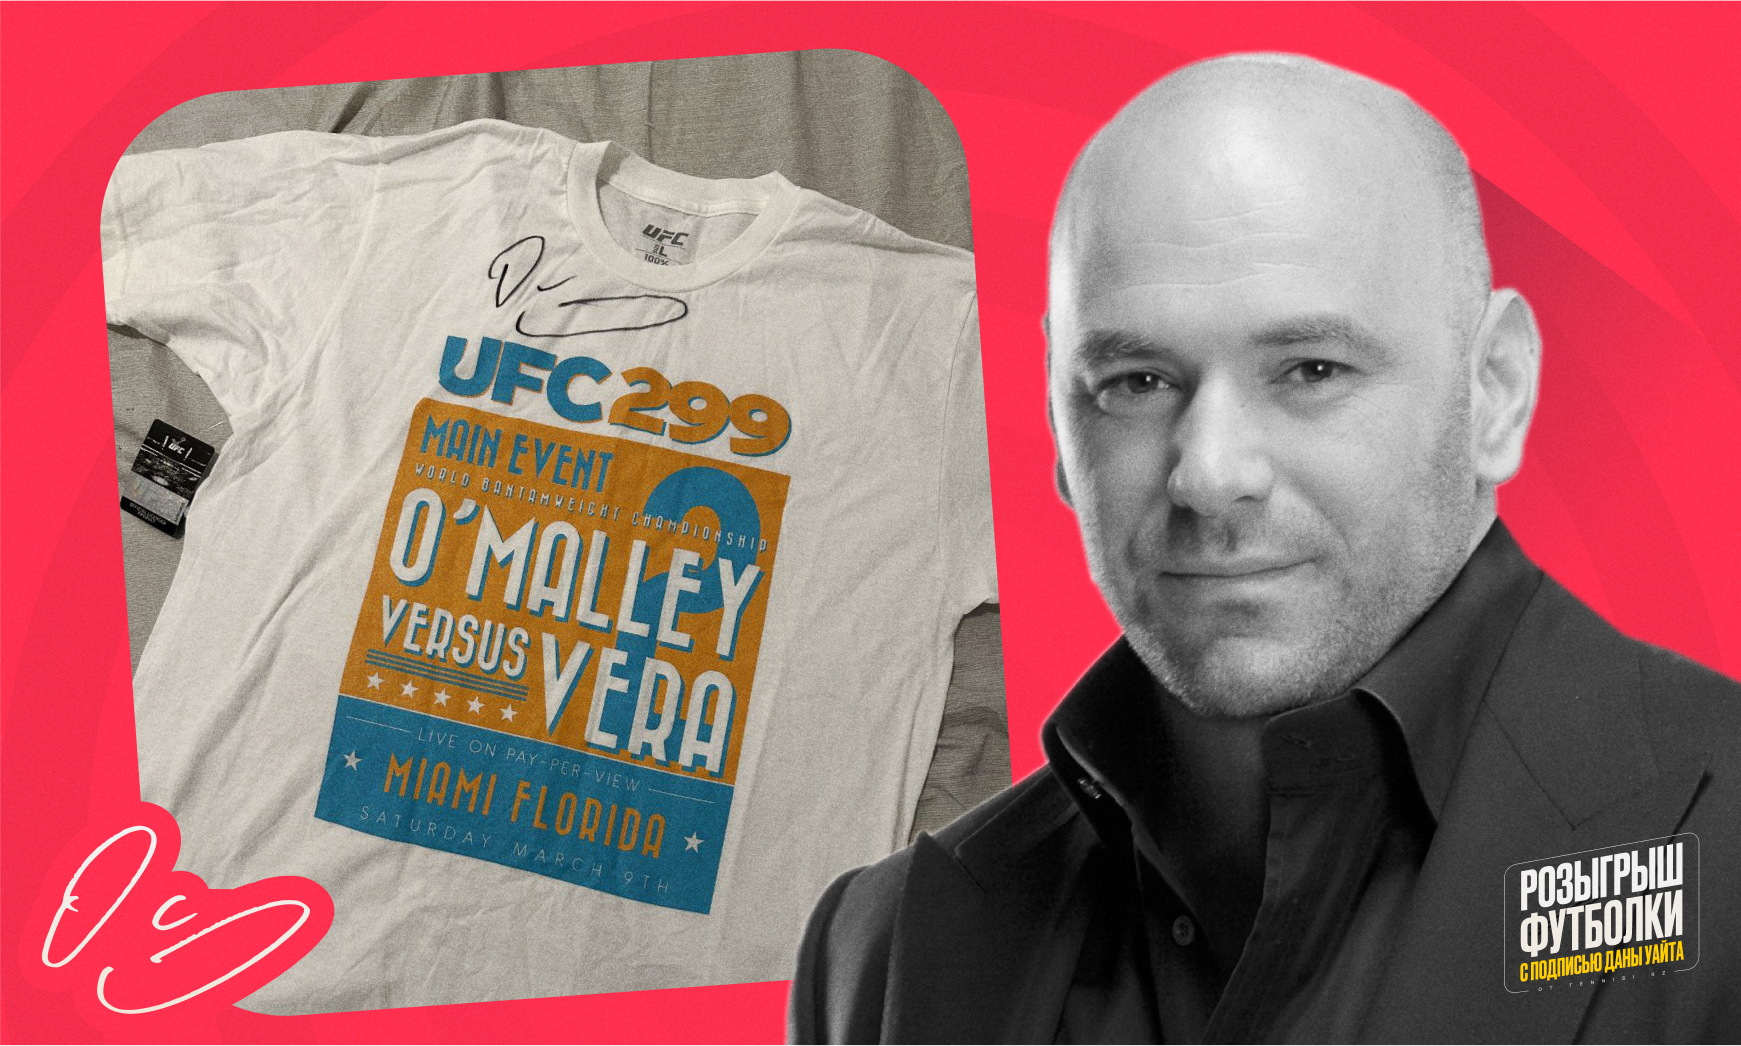 Букмекер Tennisi подарит футболку с подписью Даны Уайта прямиком с UFC 299